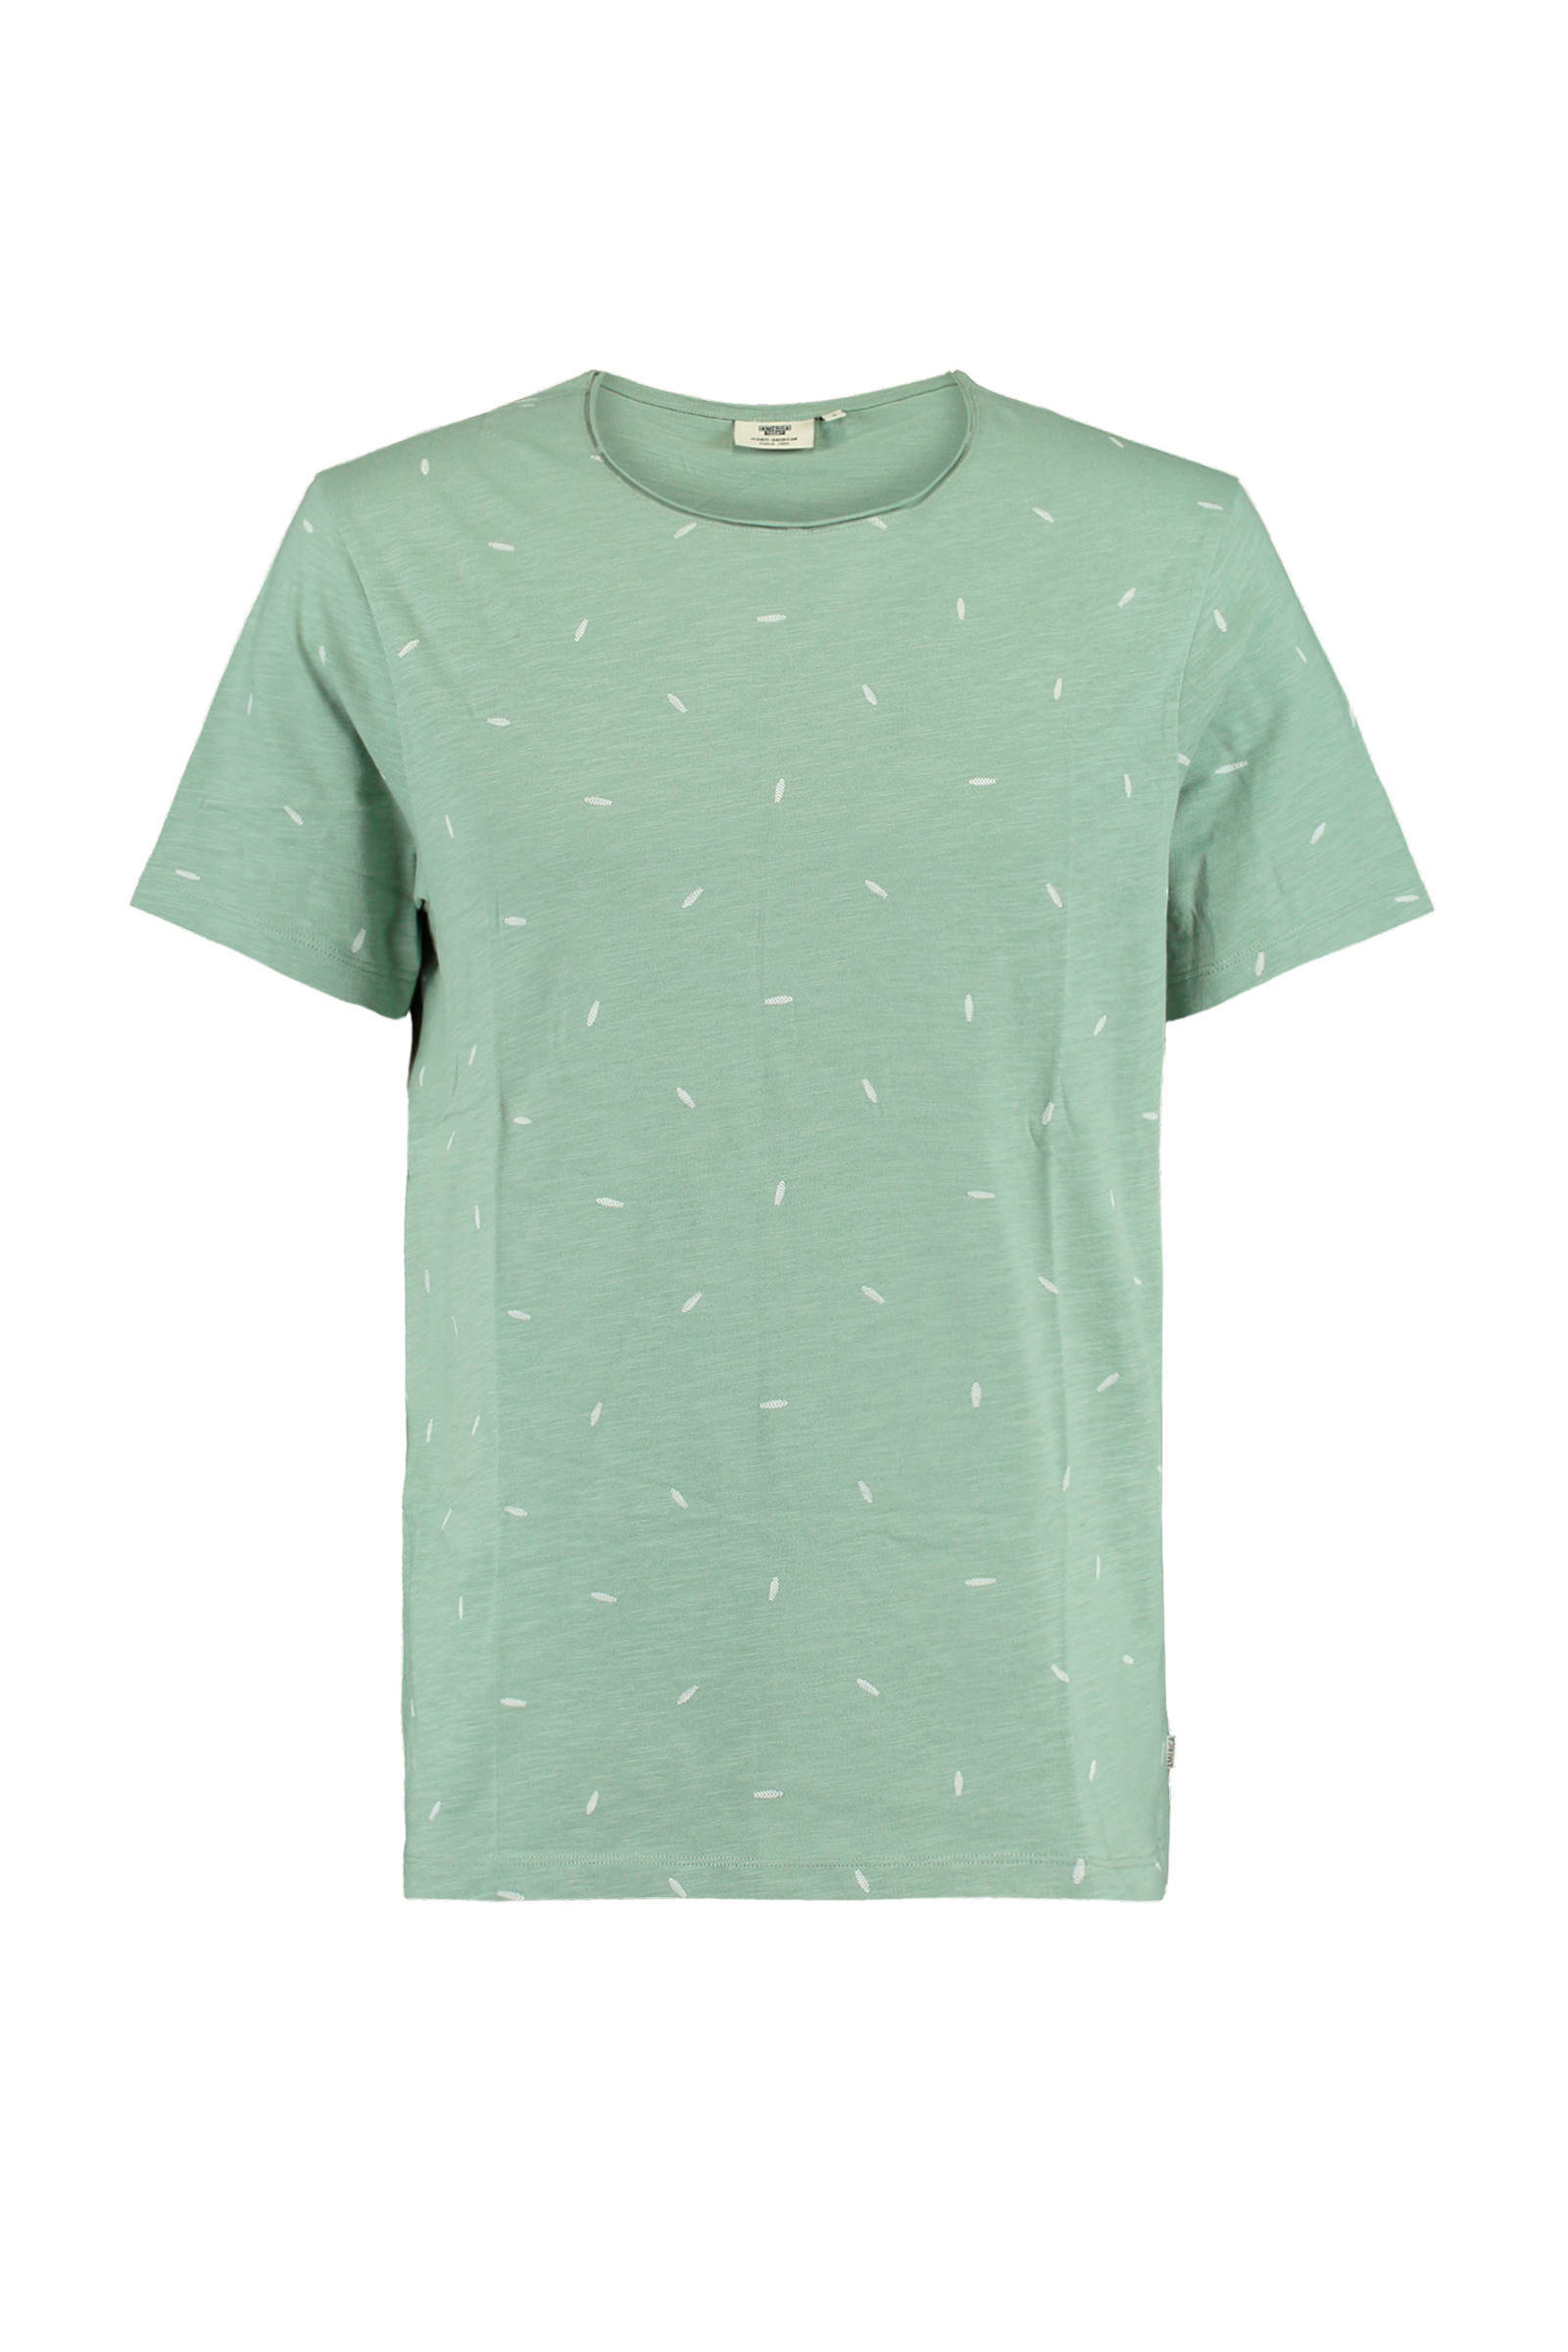 America Today T shirt Took van biologisch katoen groen online kopen